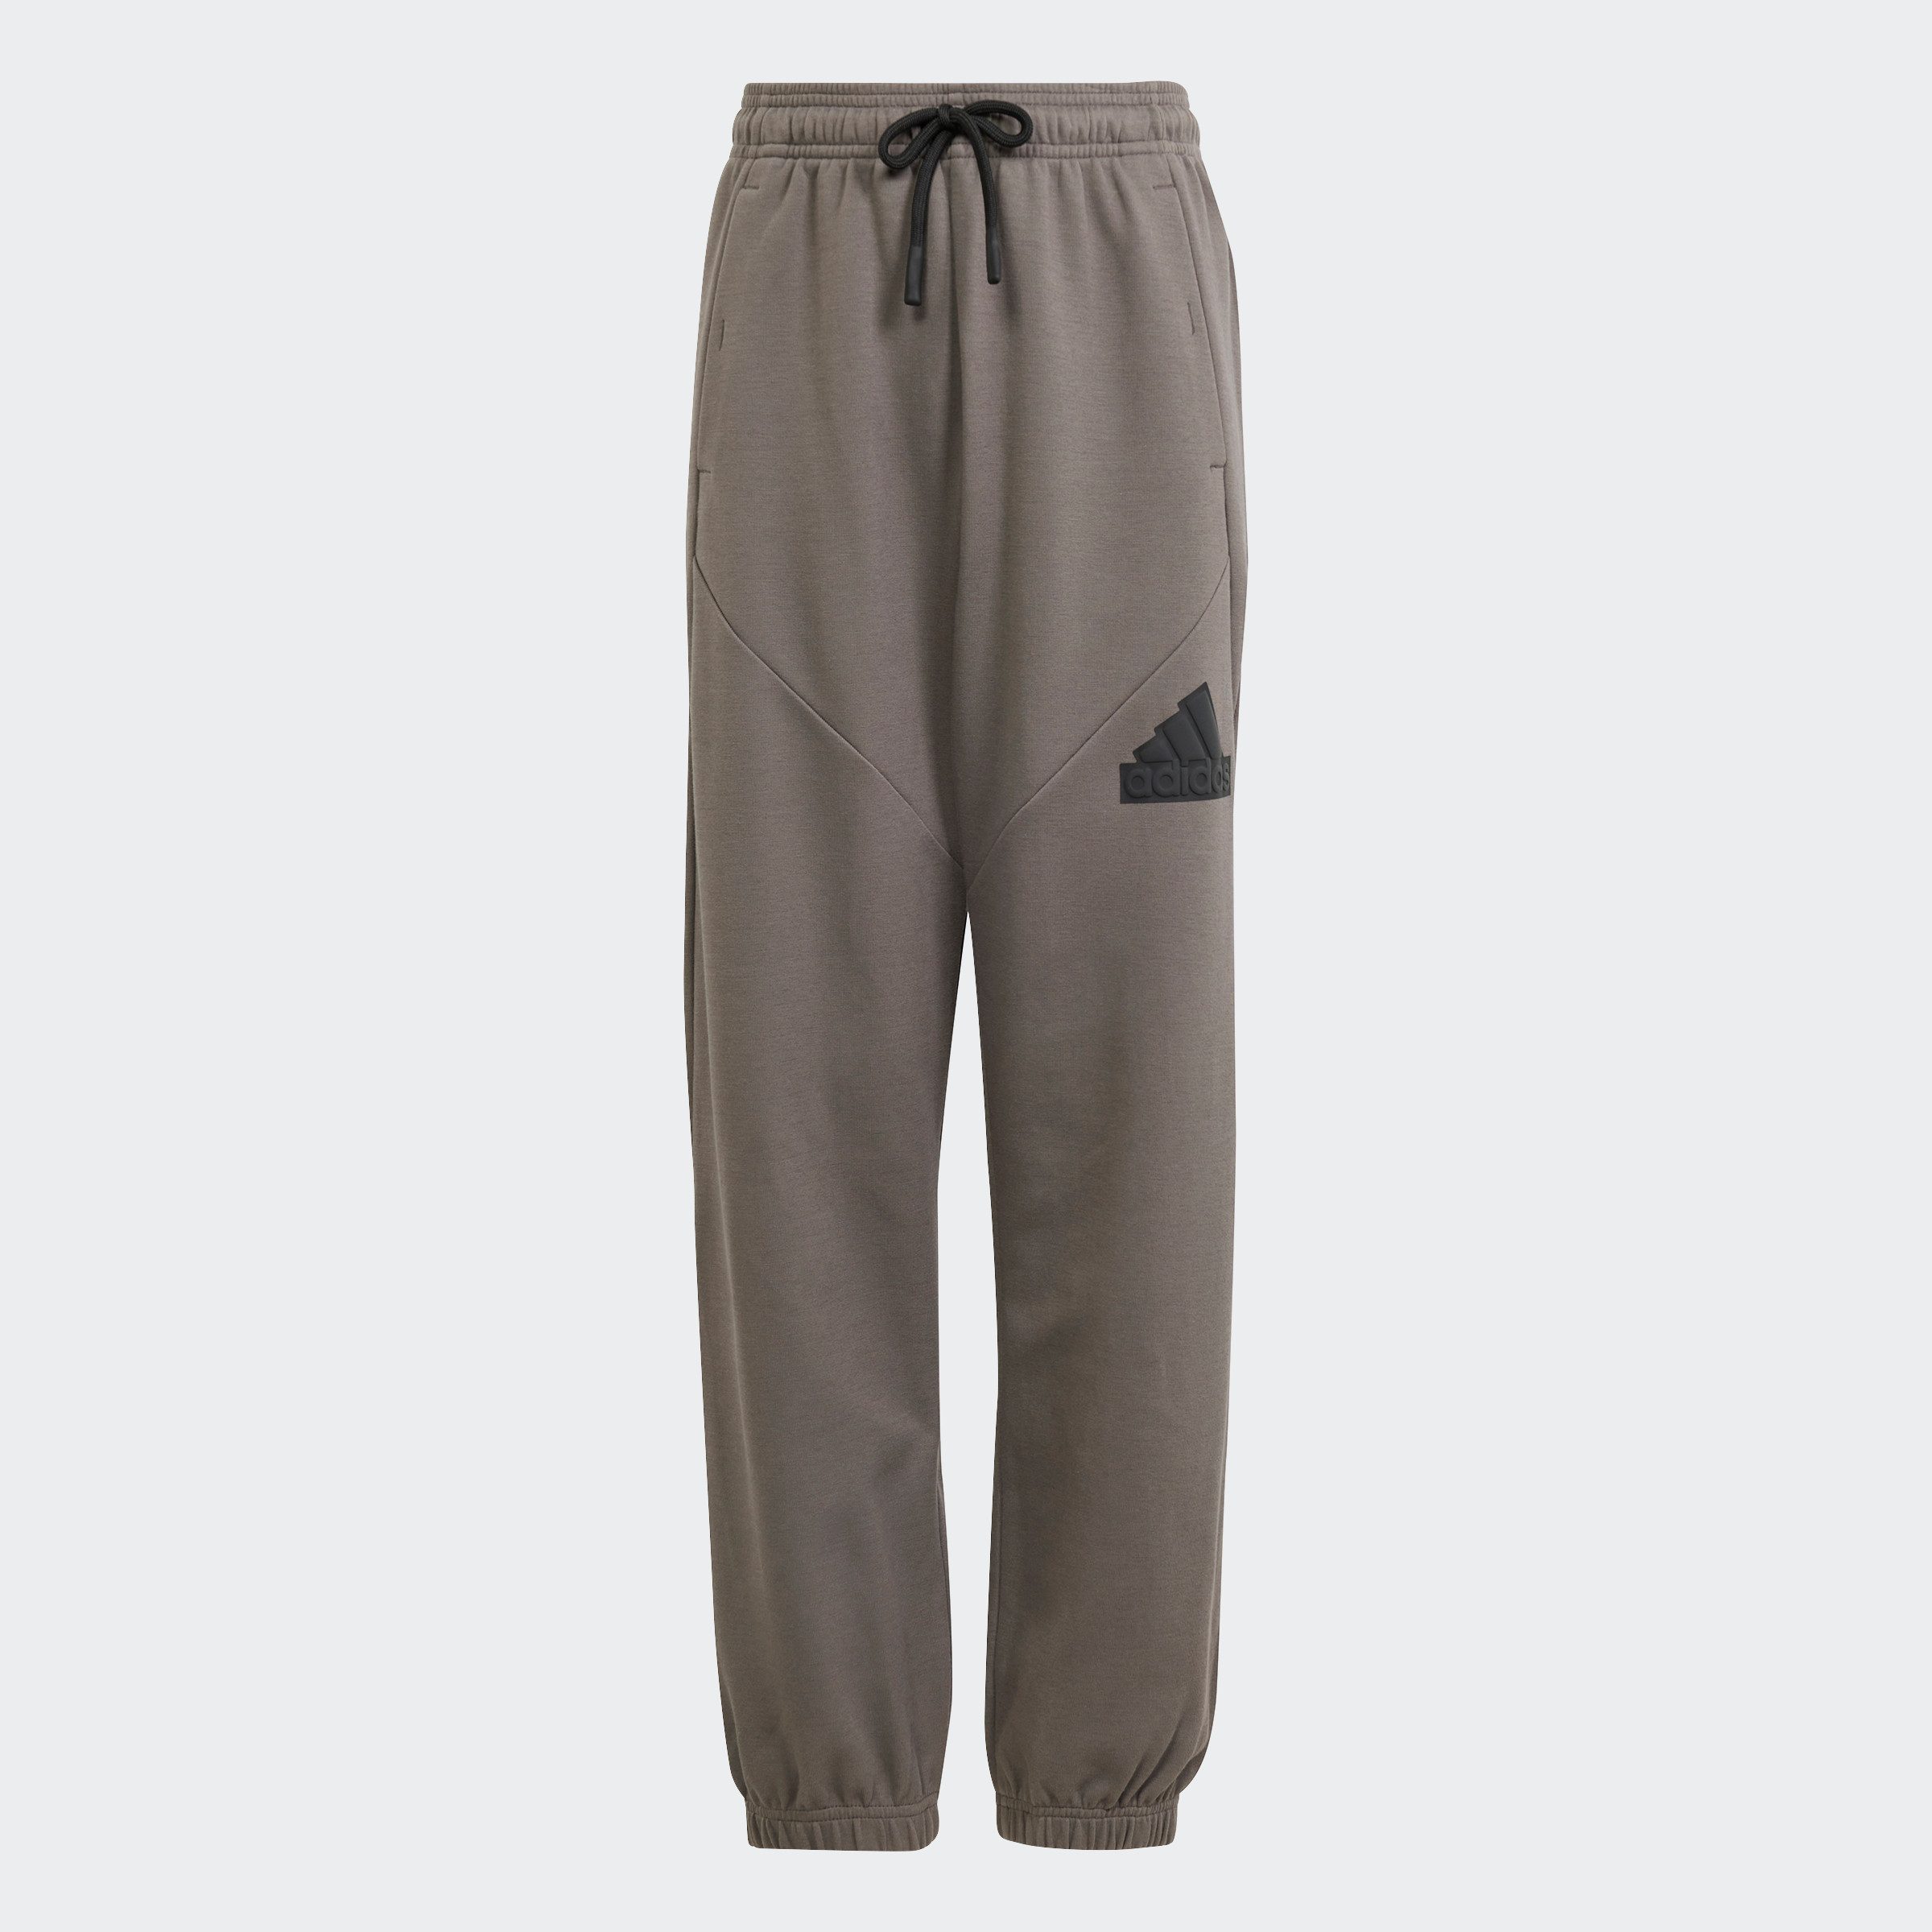 Adidas Sportswear joggingbroek grijs zwart Katoen Effen 164